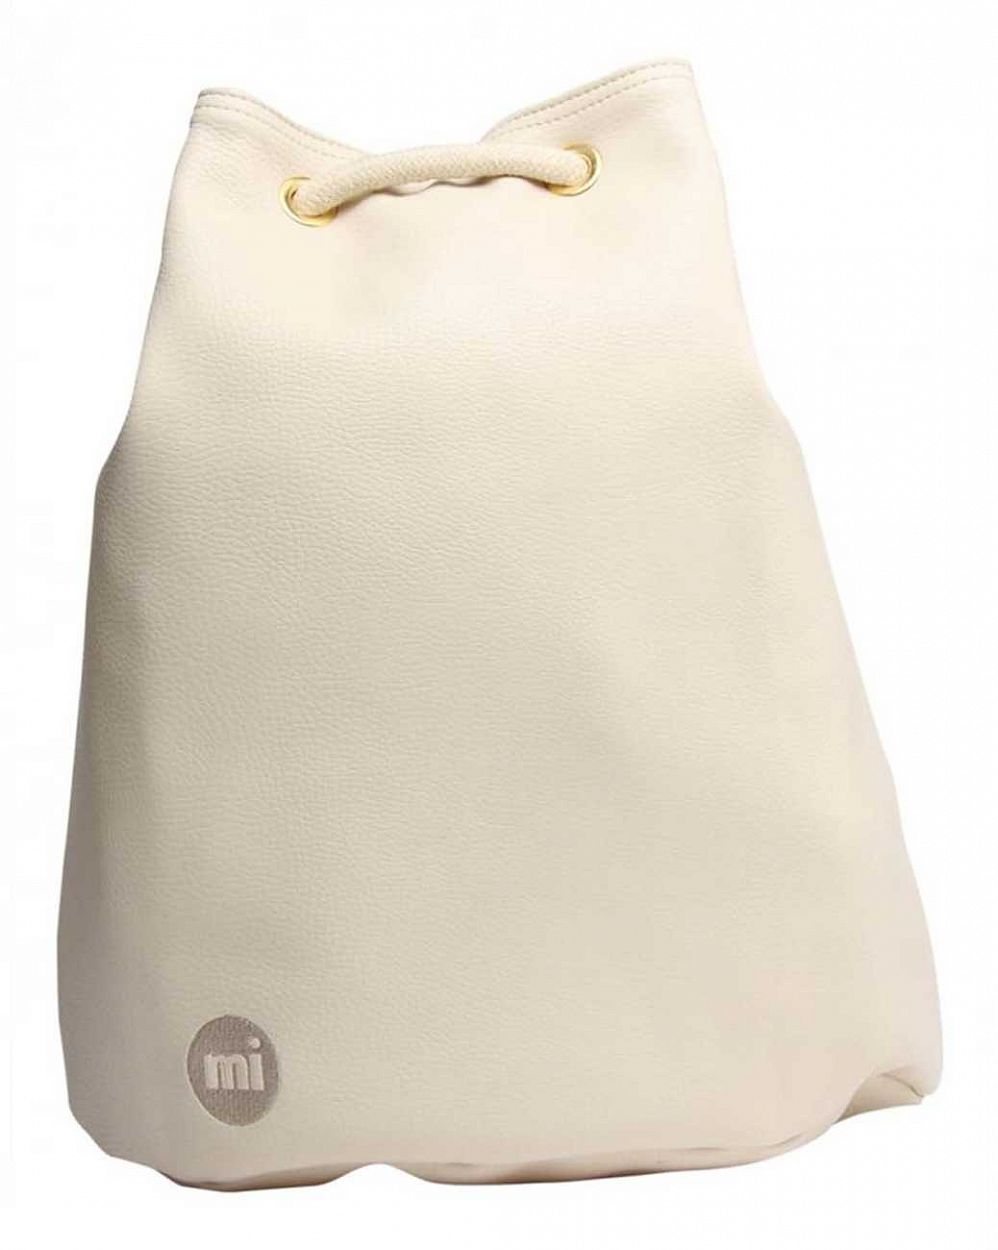 Рюкзак-мешок кожаный Mi-Pac Gold Swing Sack Bag tumbled cream отзывы